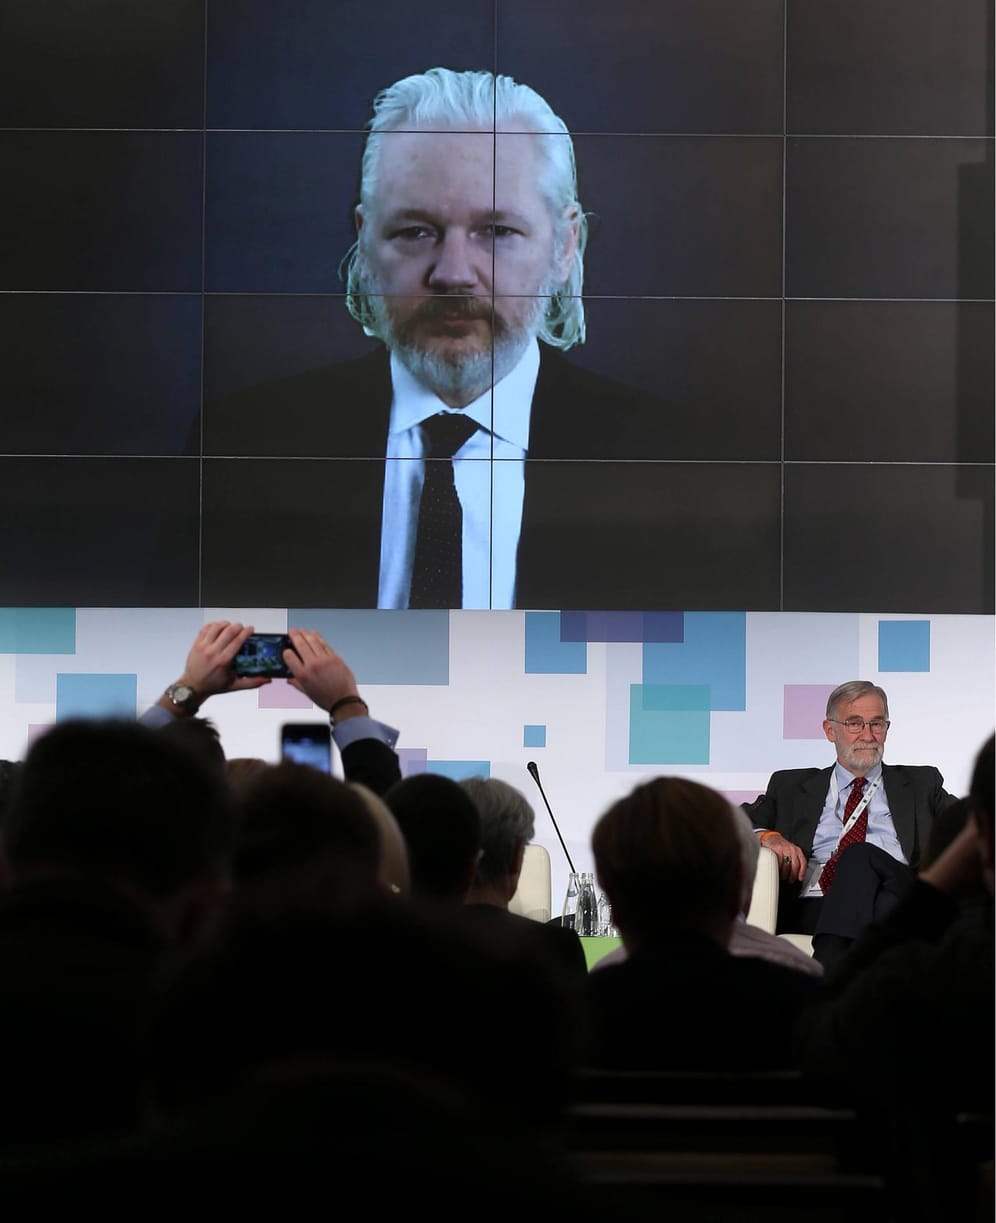 Dezember 2015: Julian Assange spricht mit dem russischen Fernsehsender "Russia Today". Die USA wirft ihm vor mit Russland zusammengearbeitet zu haben. Es geht konkret um den Präsidentschaftswahlkampf 2016 und die gestohlenen E-Mails der demokratischen Partei.